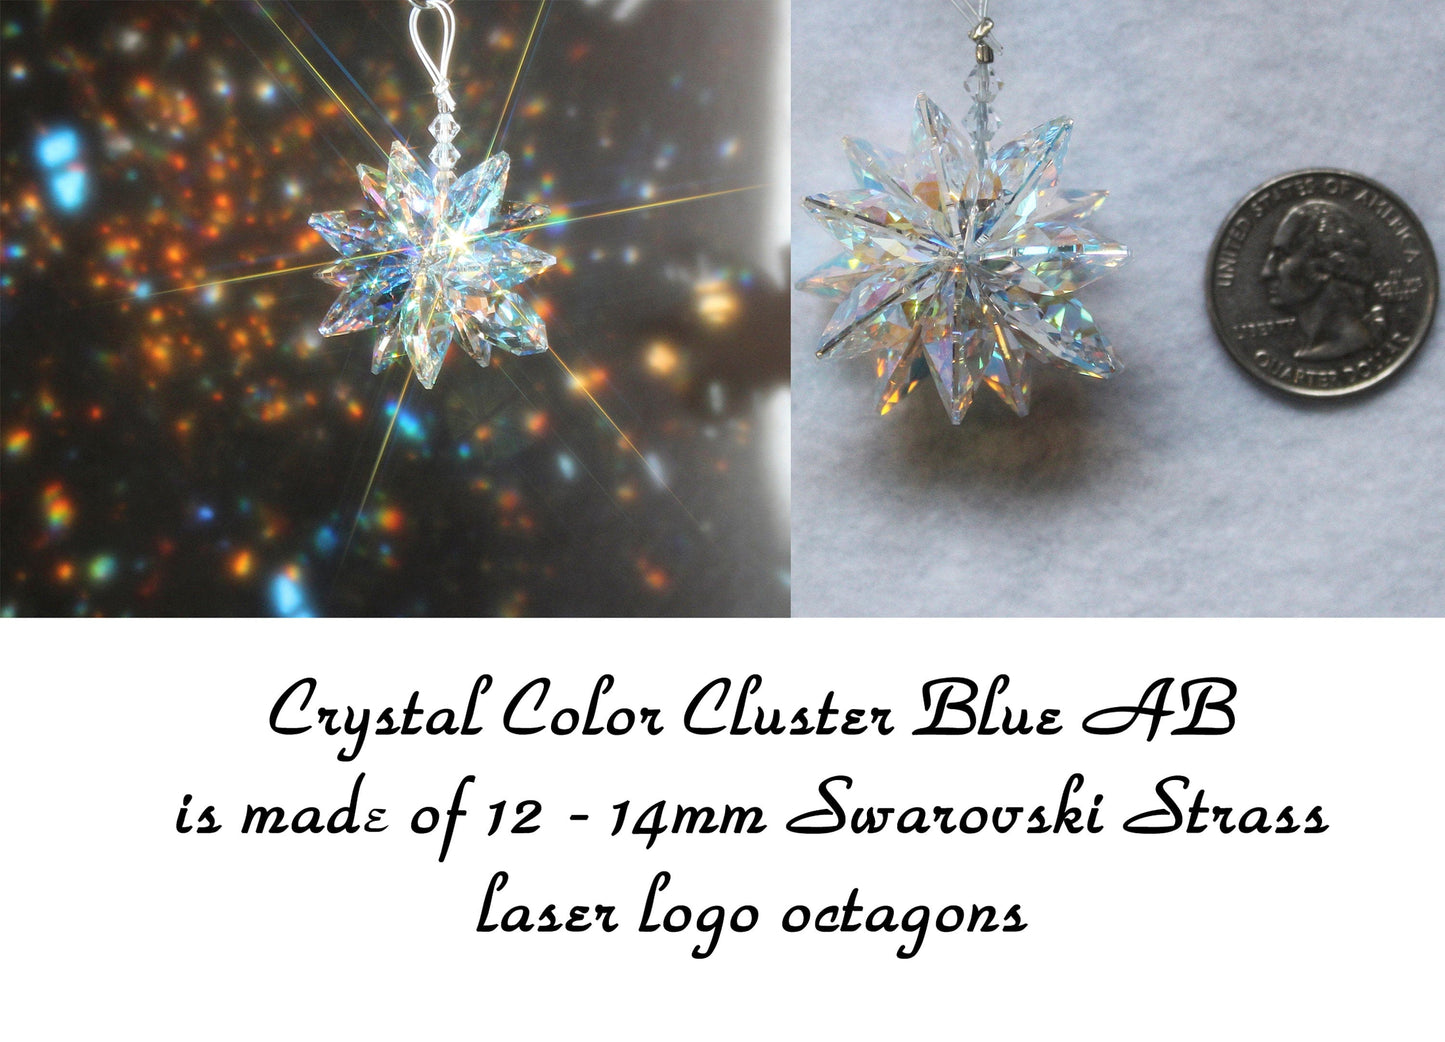 Swarovski Strass laser logo Prisms
Blue AB color crystal cluster contains 12 14mm octagons